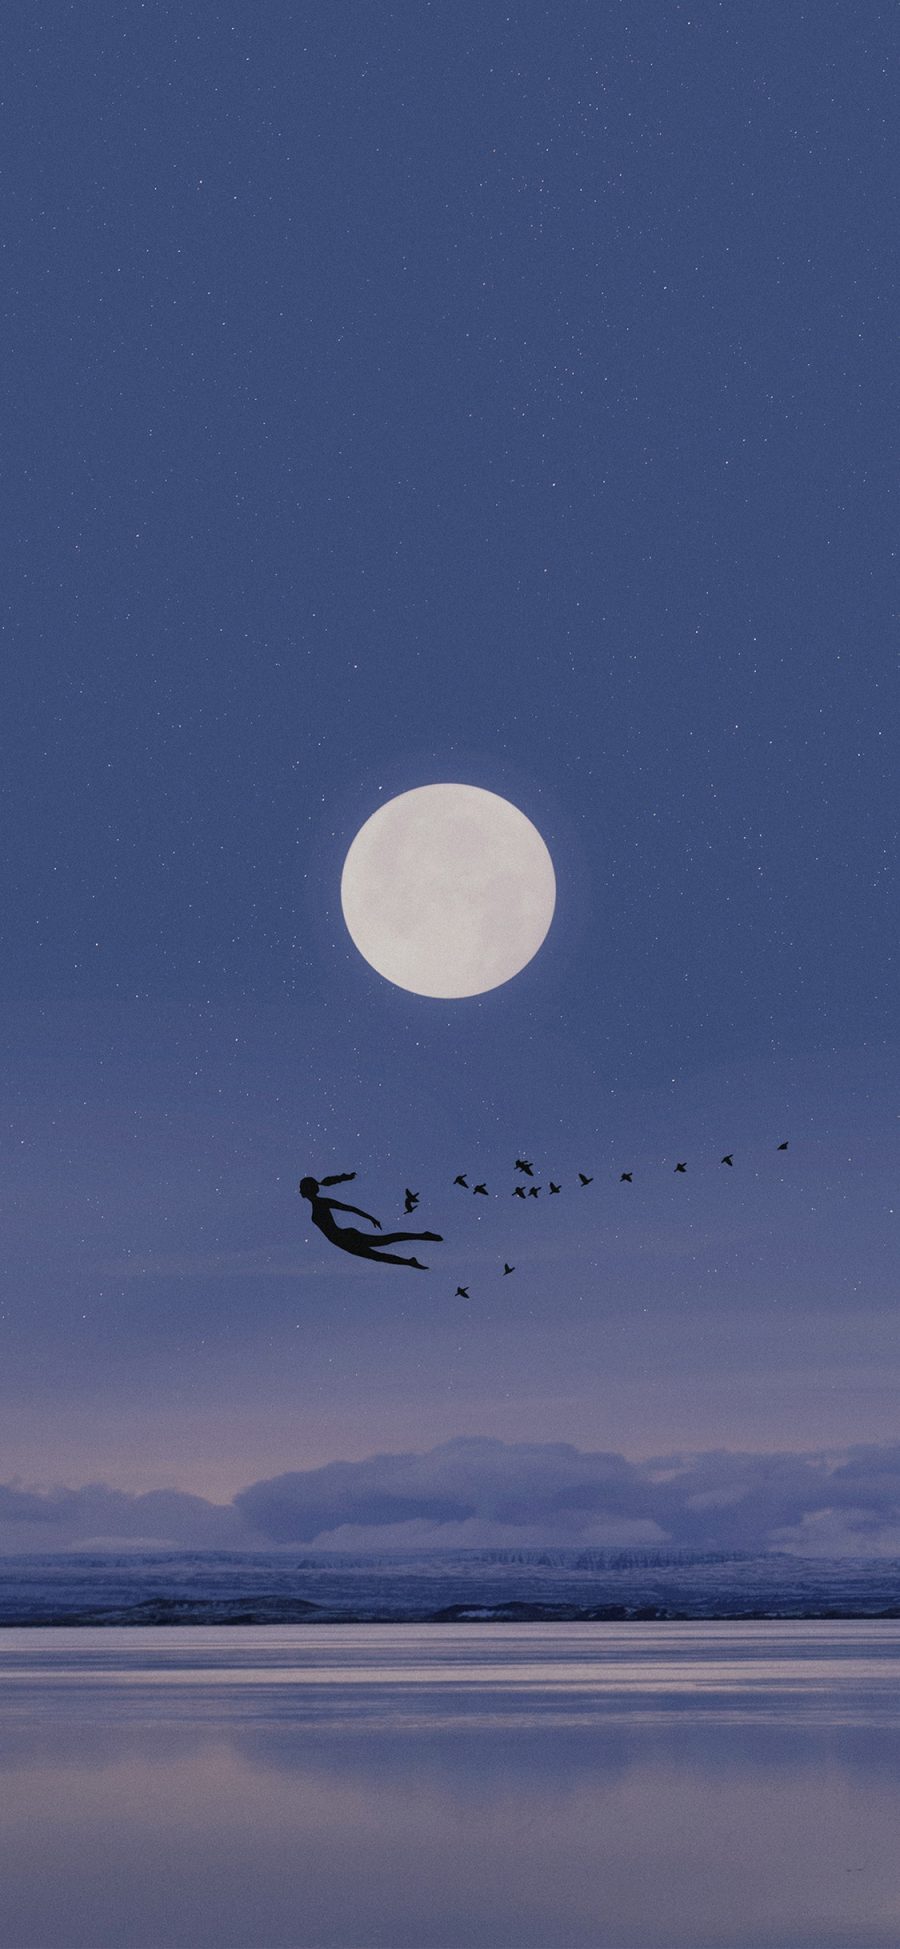 [2436×1125]插图 星空 夜景 月亮 飞鸟 苹果手机动漫壁纸图片